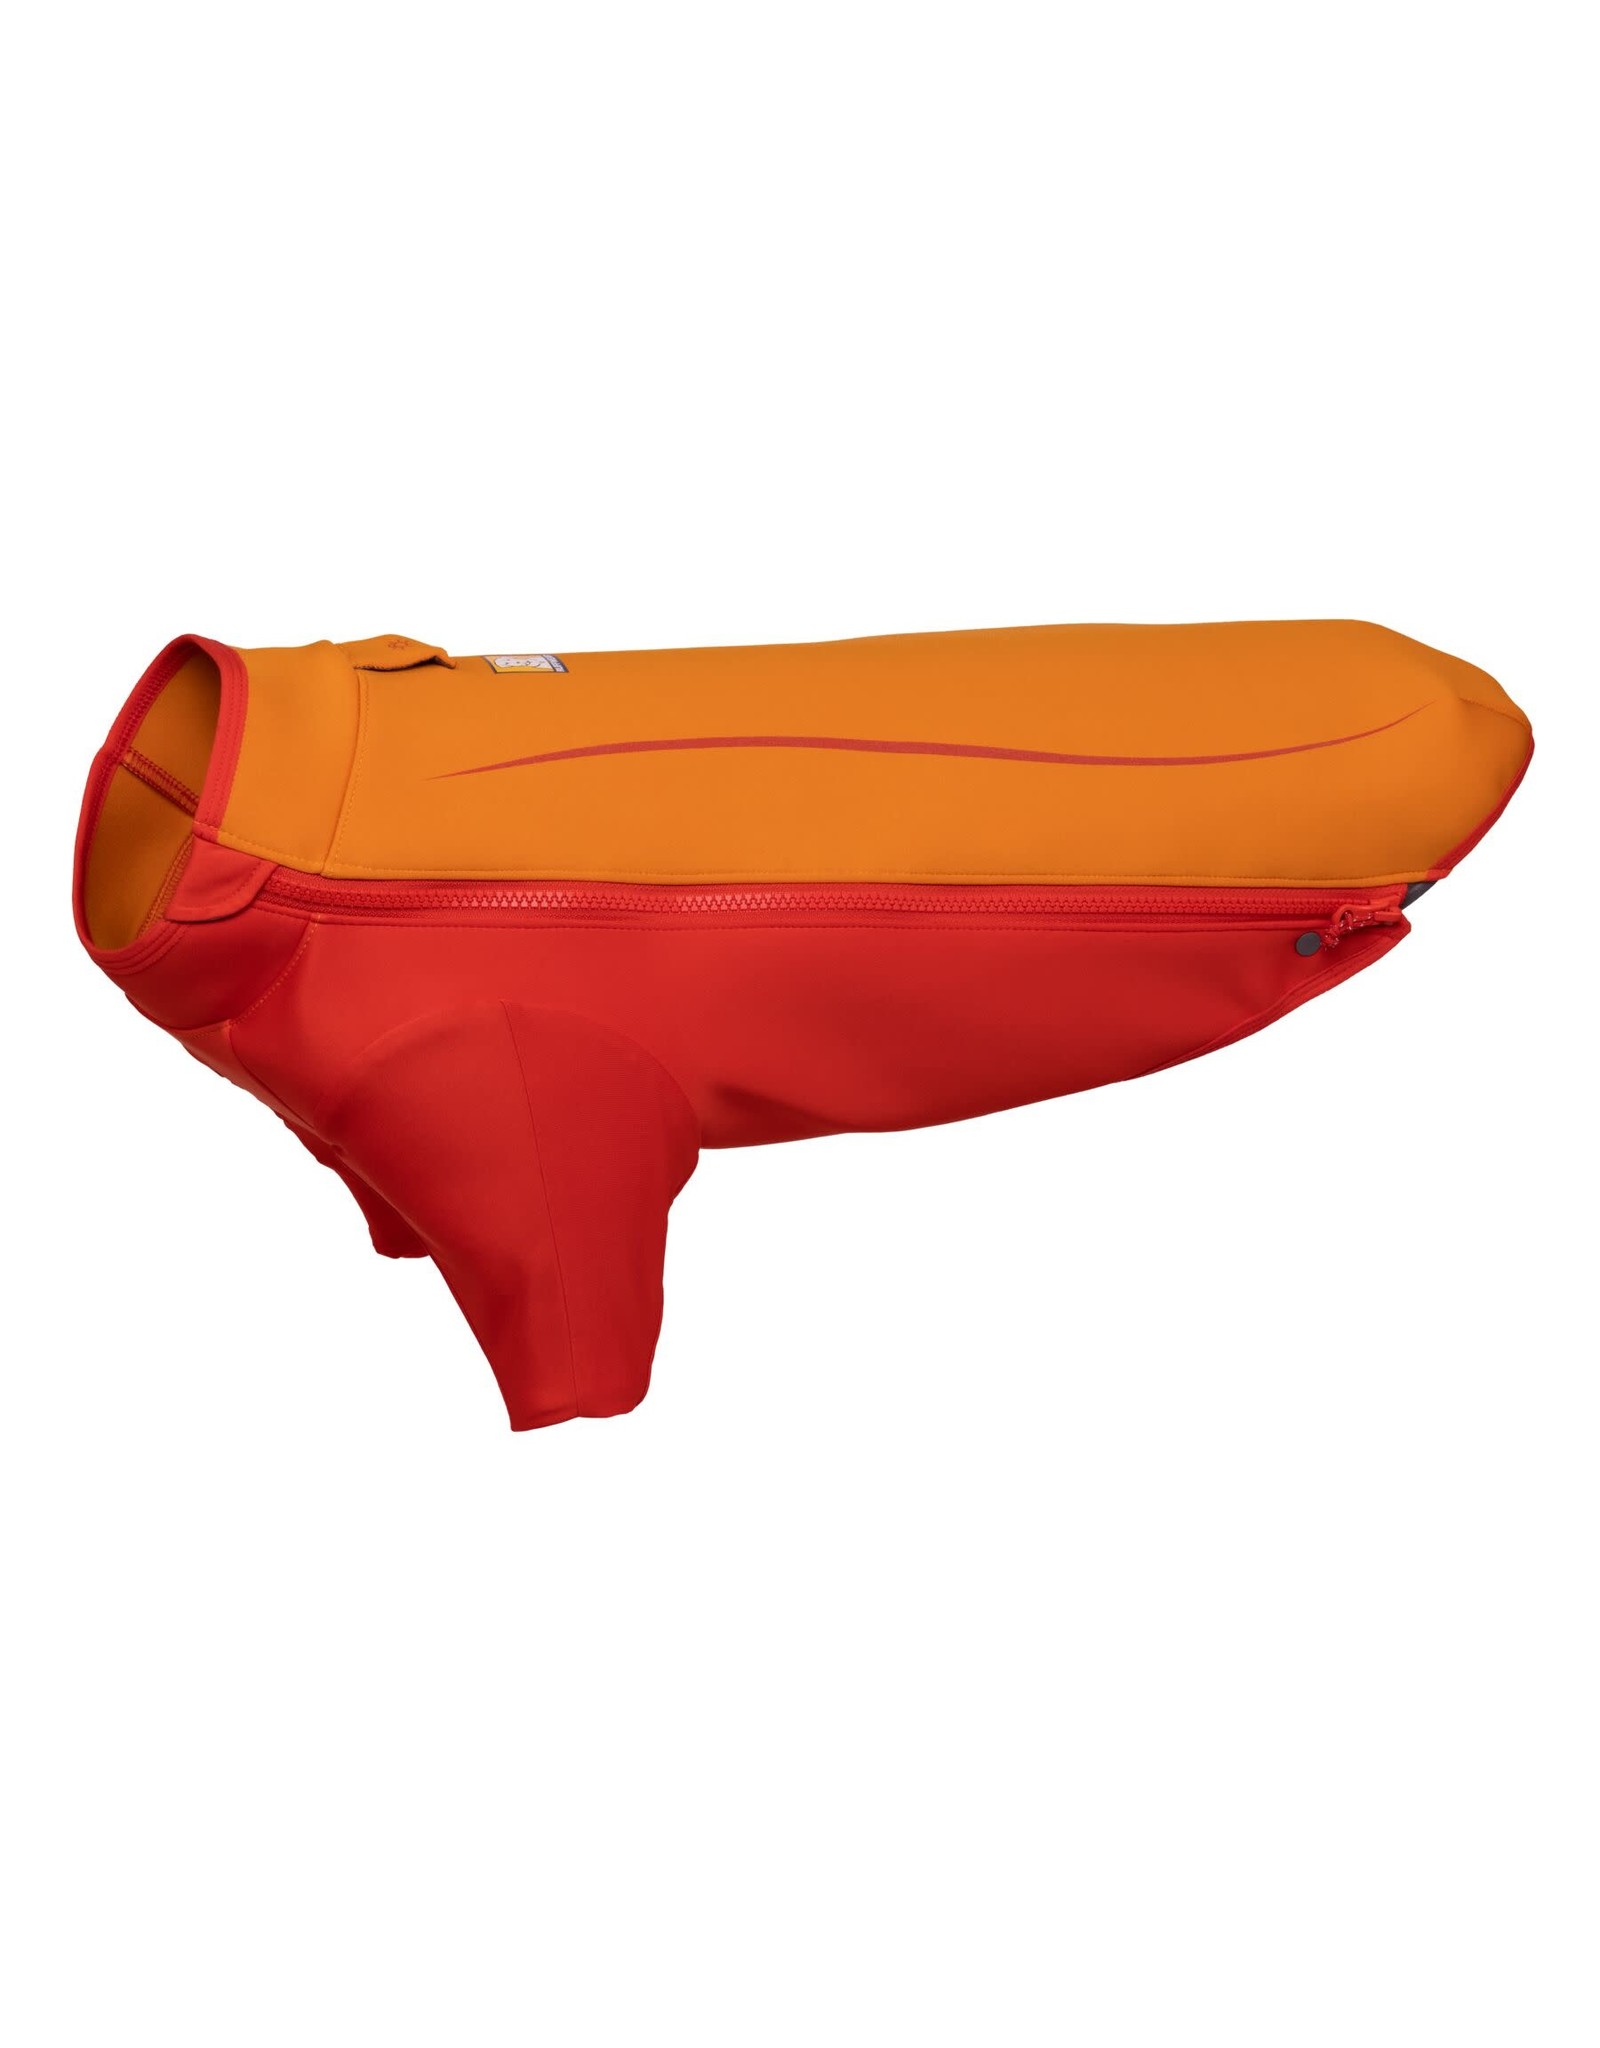 Ruffwear Undercoat Water Jacket: Campfire Orange, L